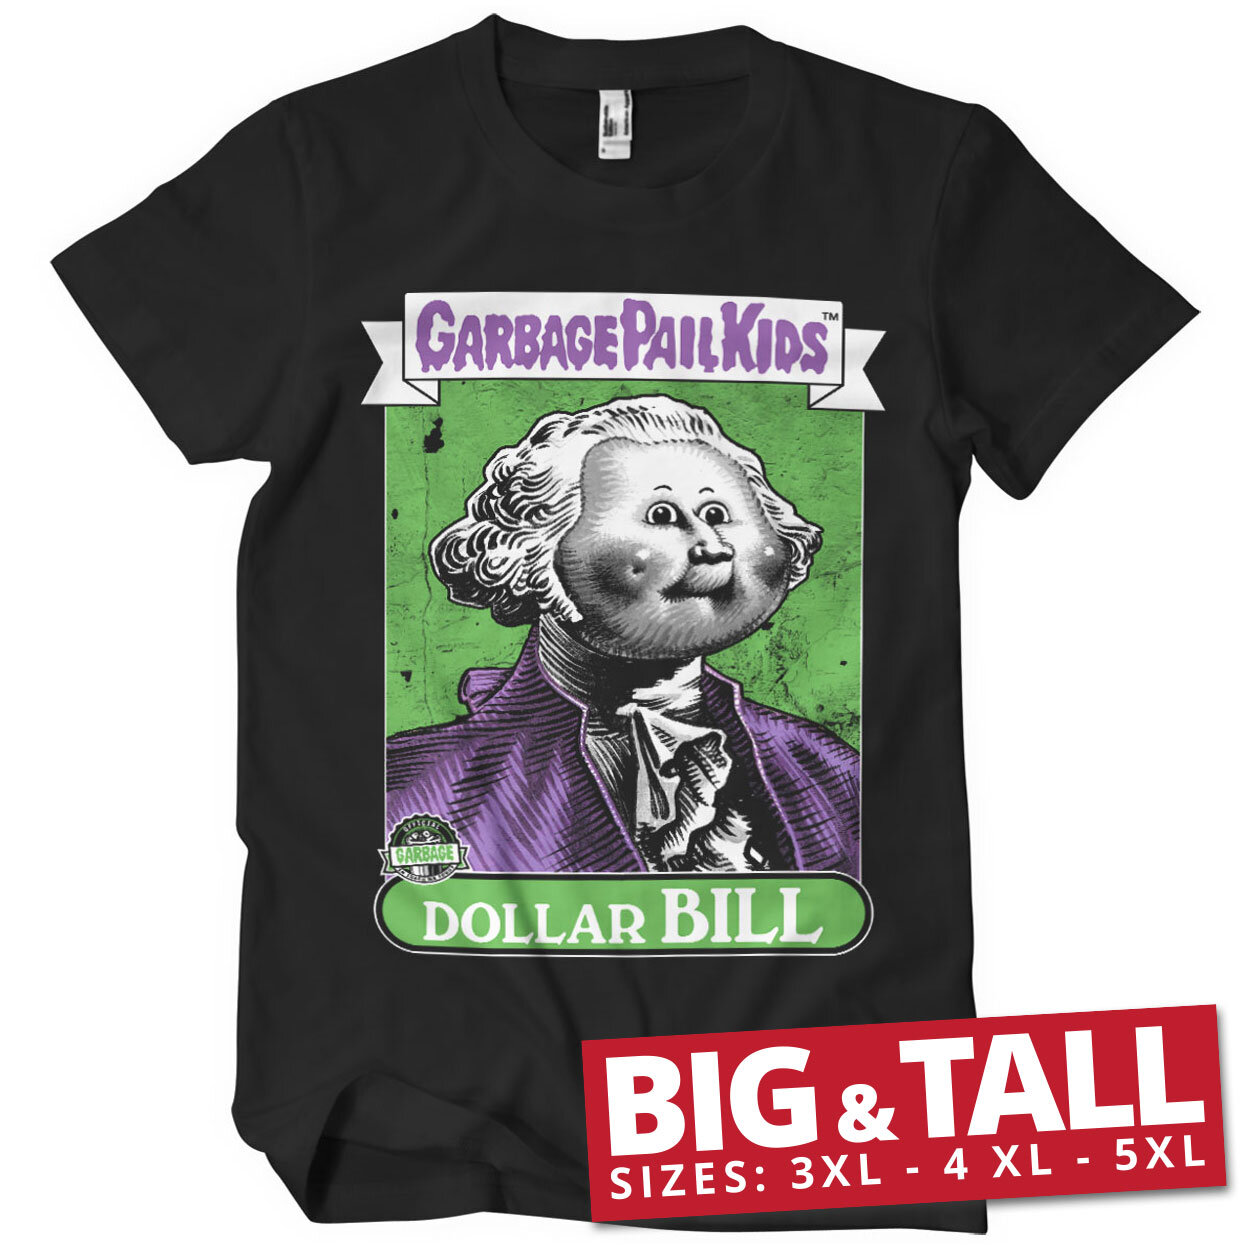 Dollar Bill Big & Tall T-Shirt